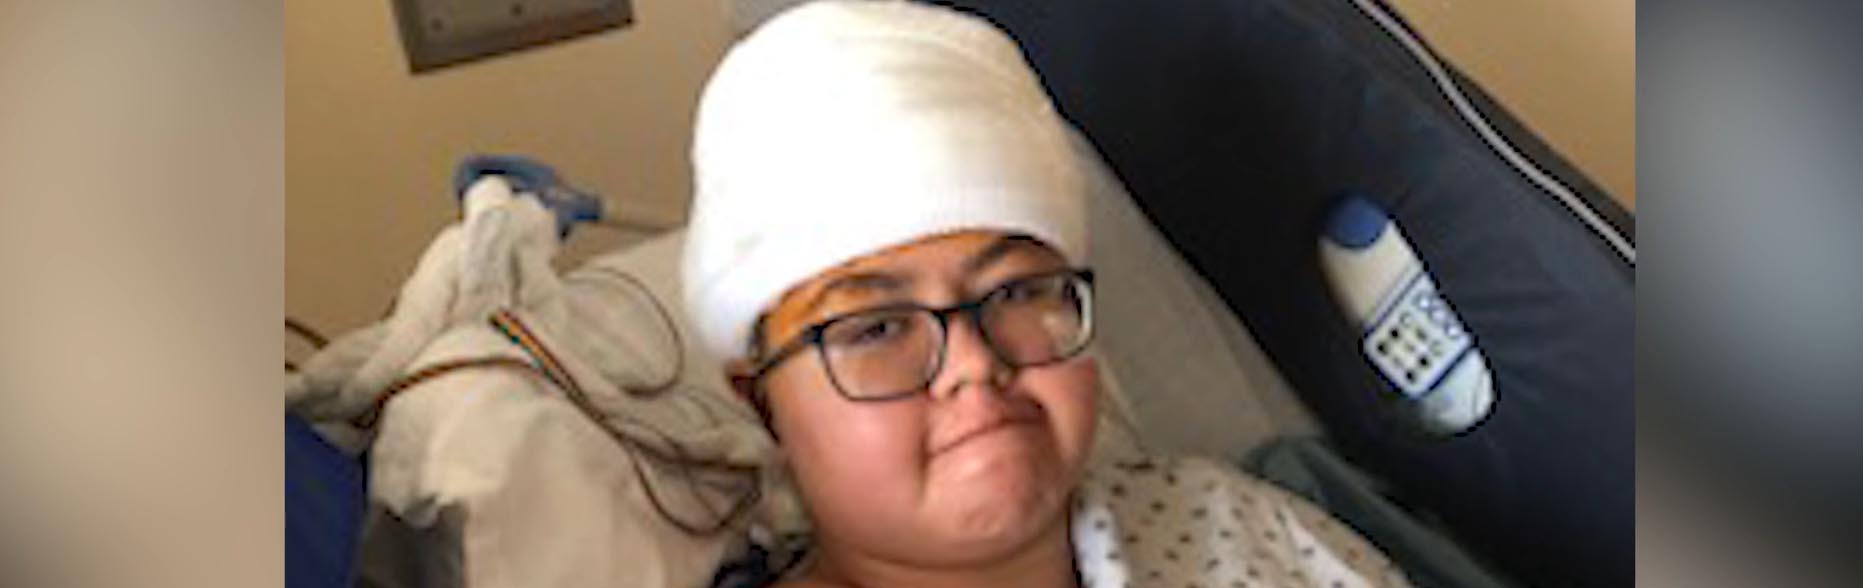 Nizhoni Begay dans un lit d'hôpital avec des bandages sur la tête